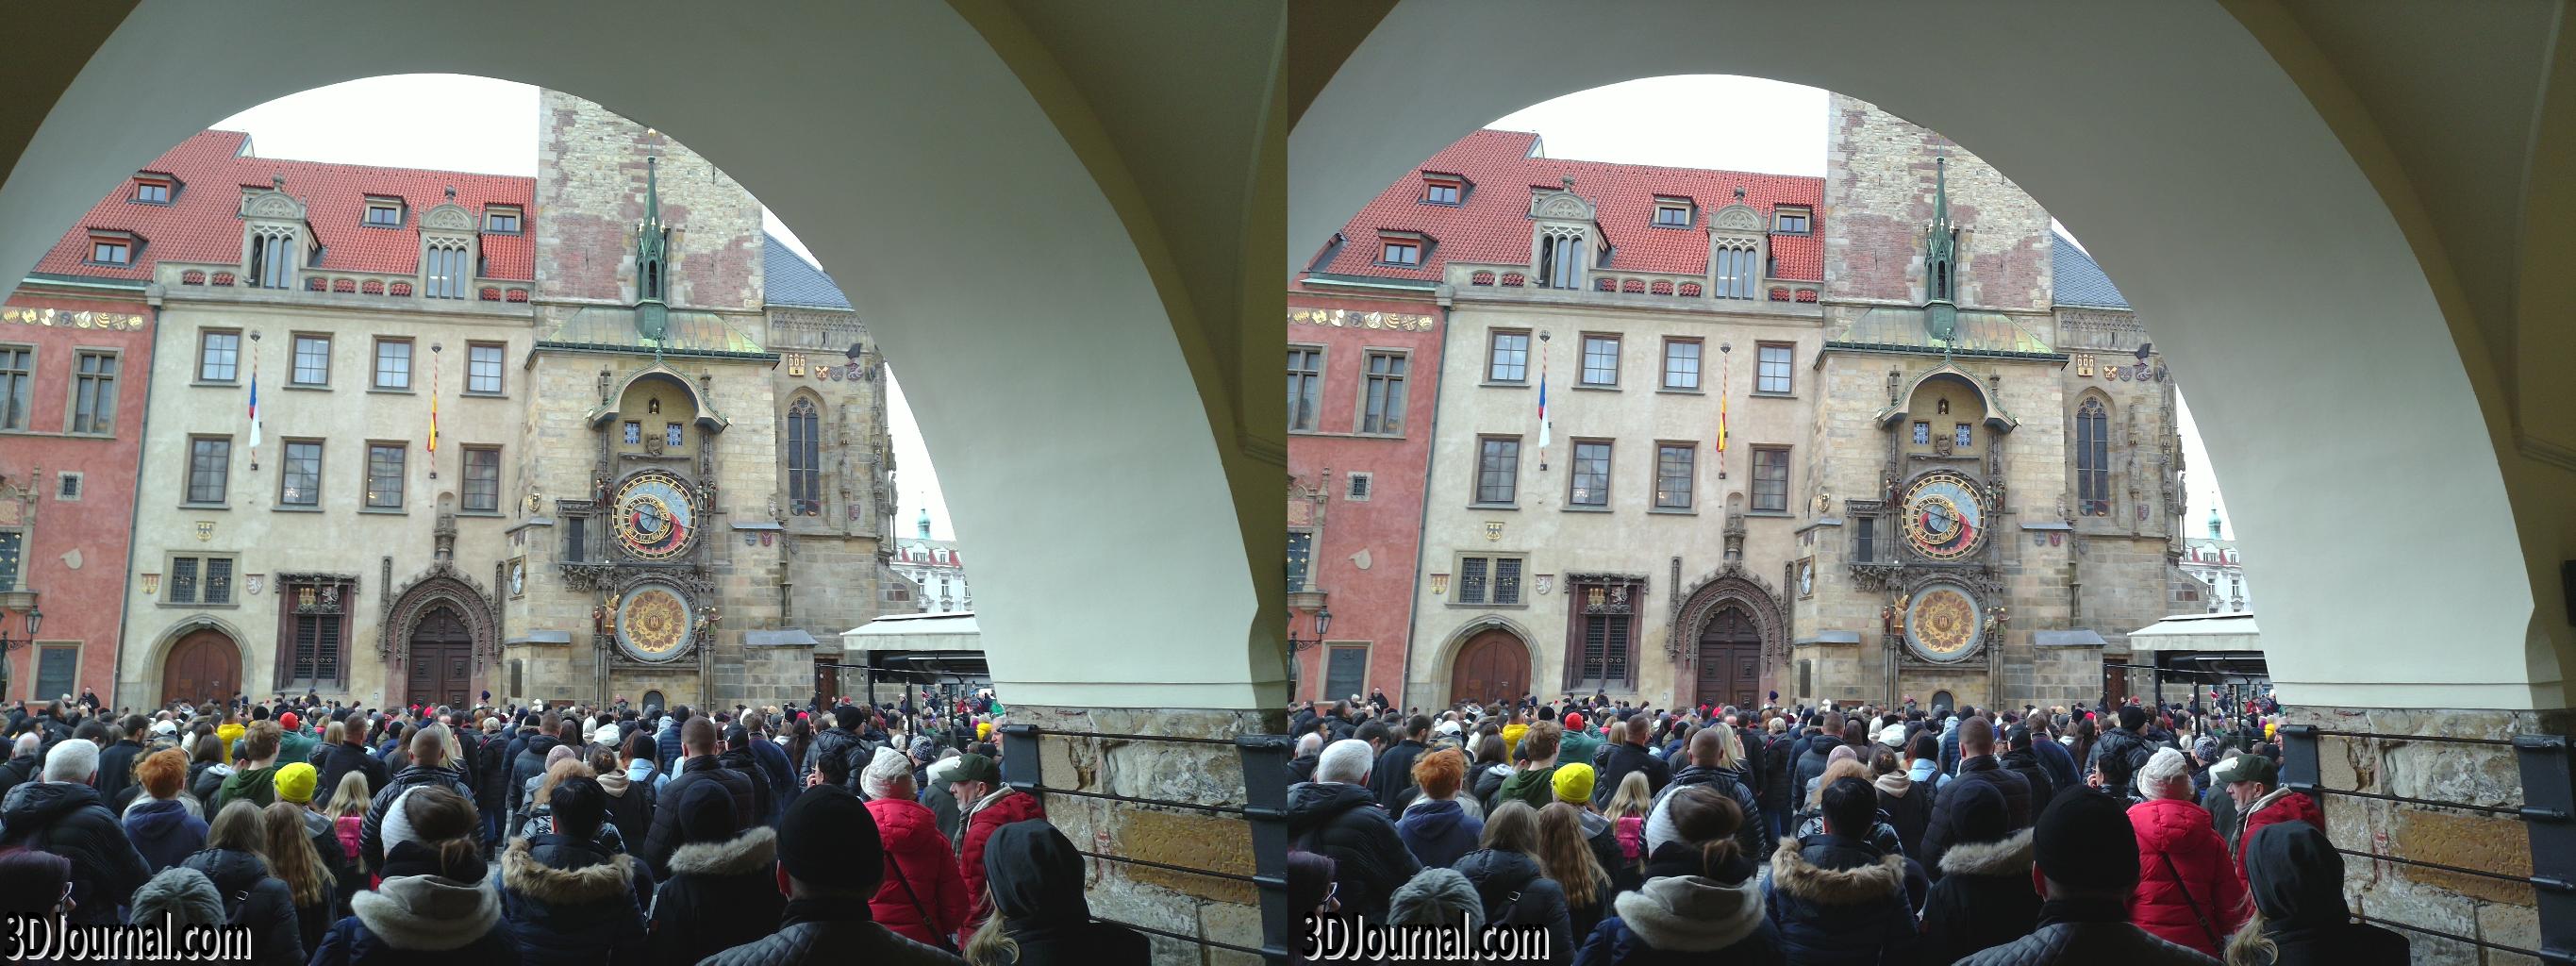 Altstädter Ring in Prag - bei der astronomischen Uhr